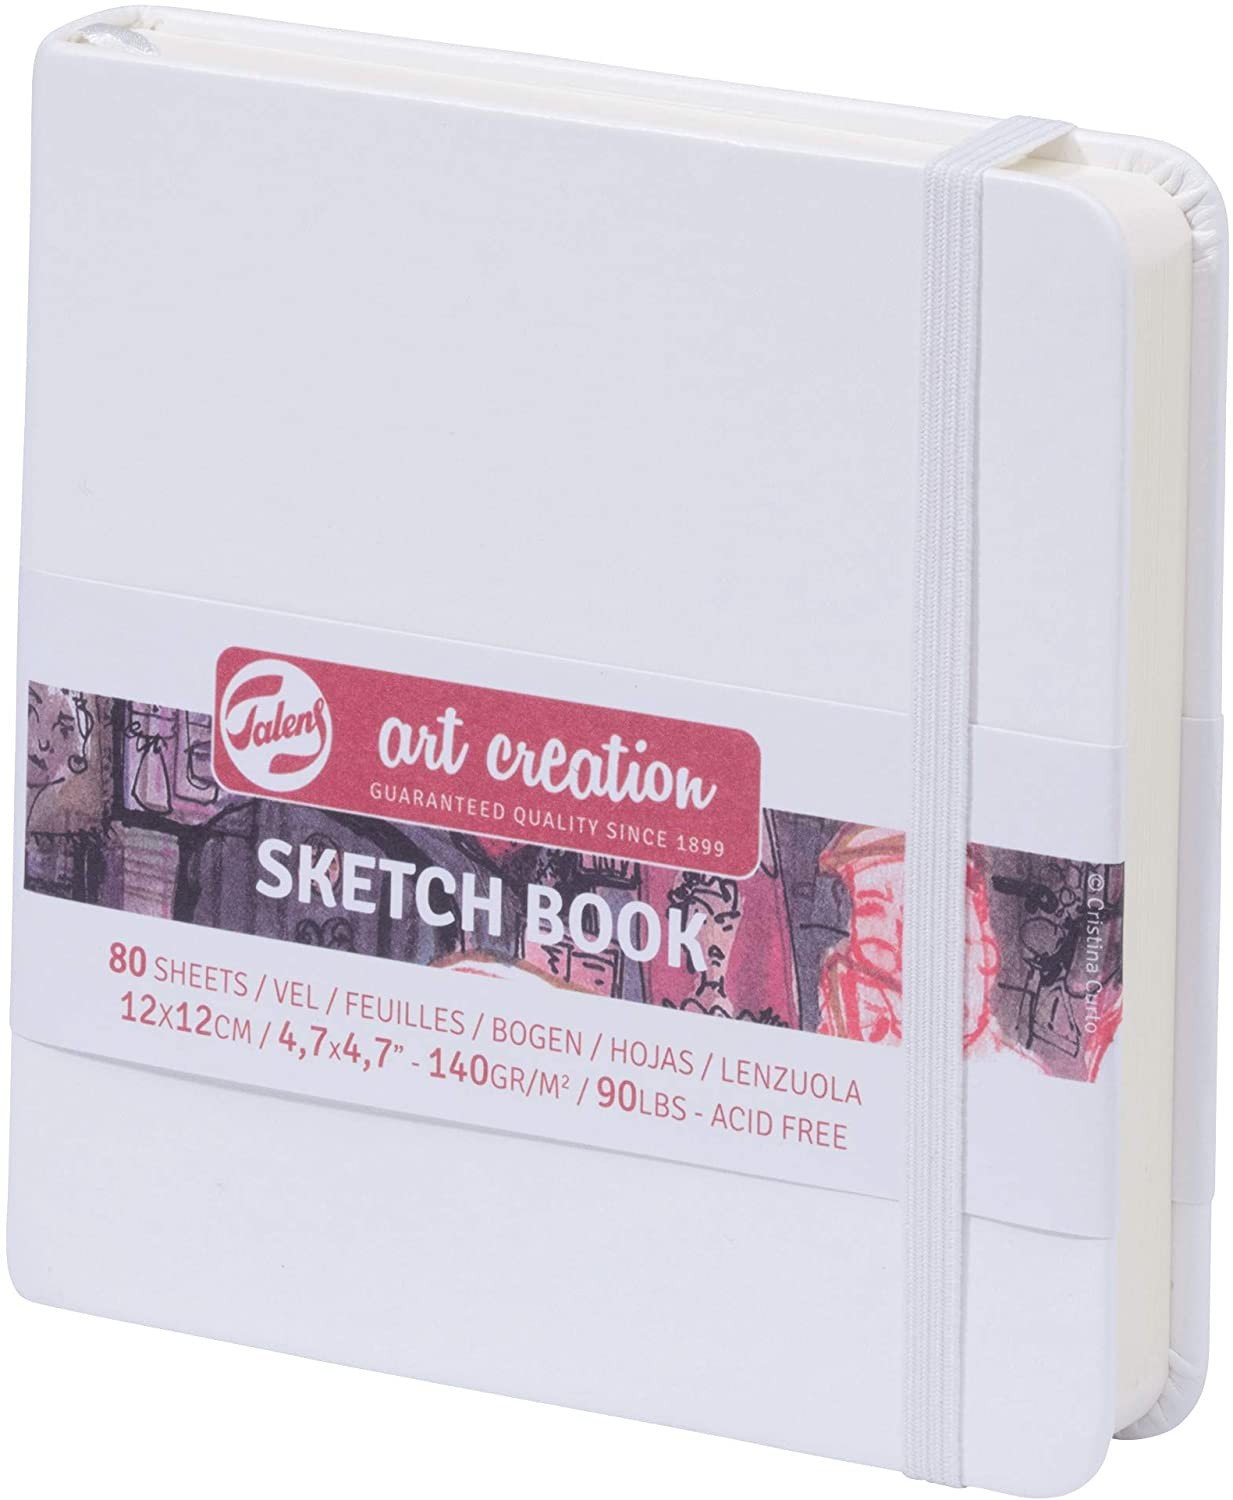 Royal Talens Art Creation Sketchbook, 80 Sheets 140gsm